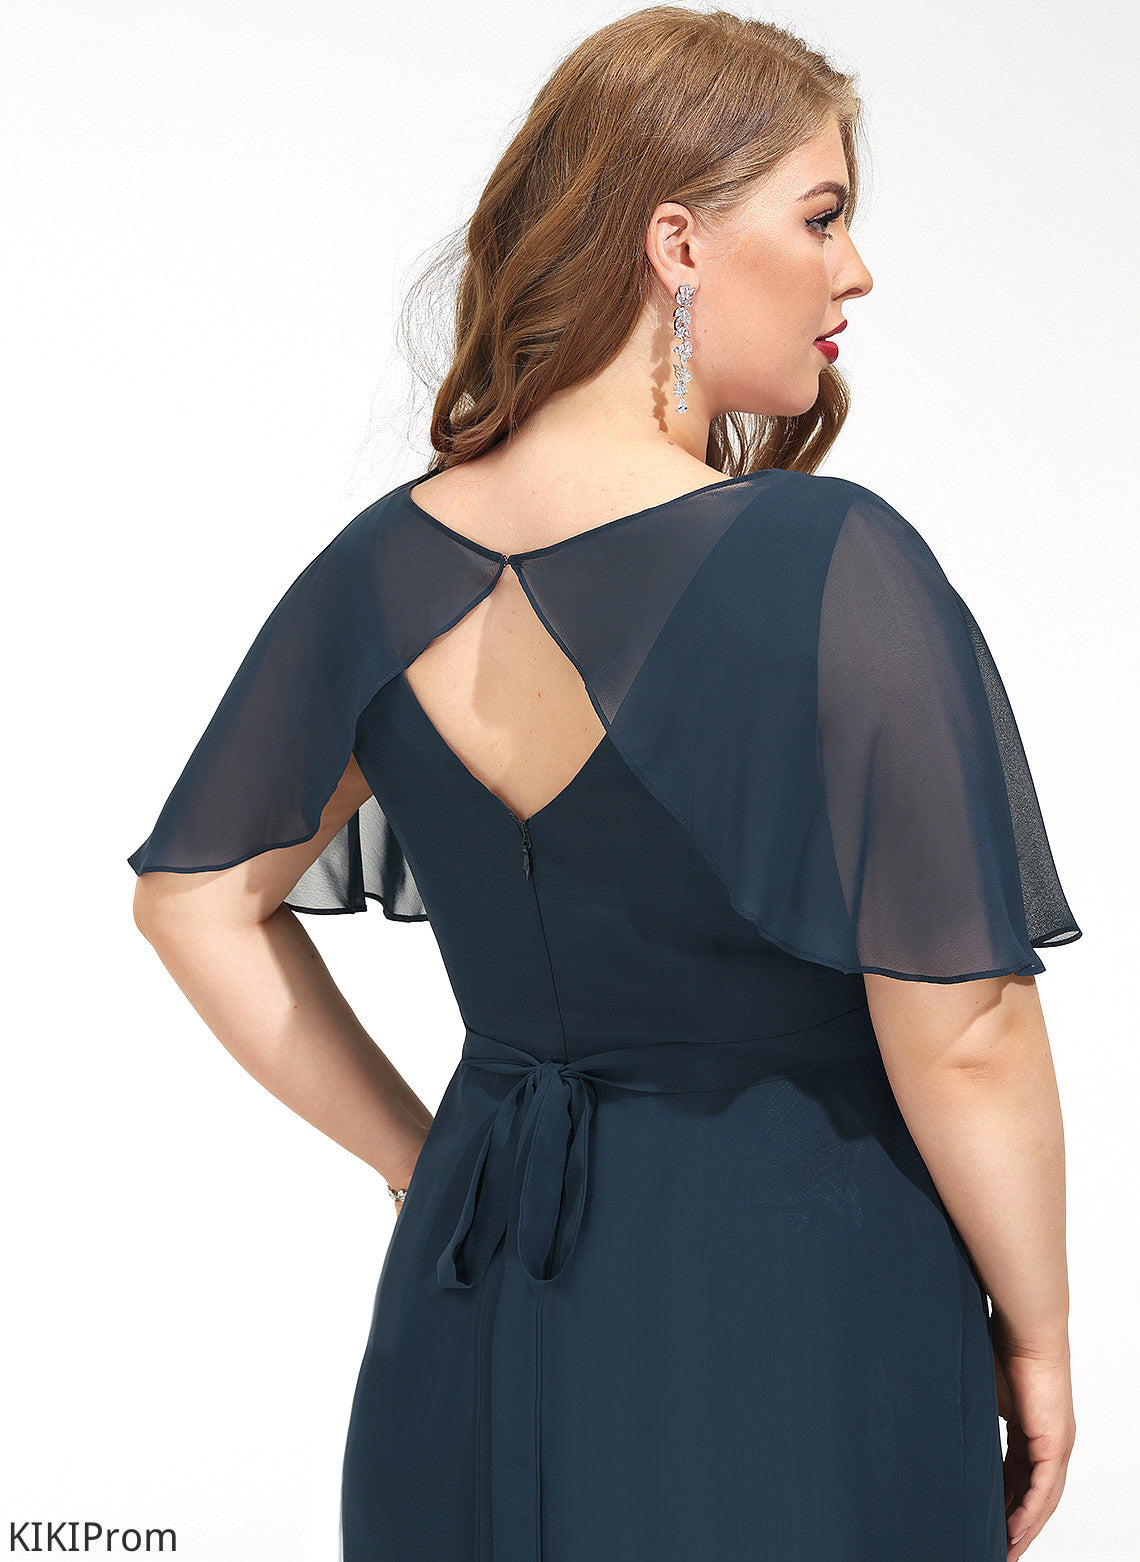 Straps&Sleeves Fabric V-neck Length Silhouette A-Line Asymmetrical Neckline Emelia Bridesmaid Dresses